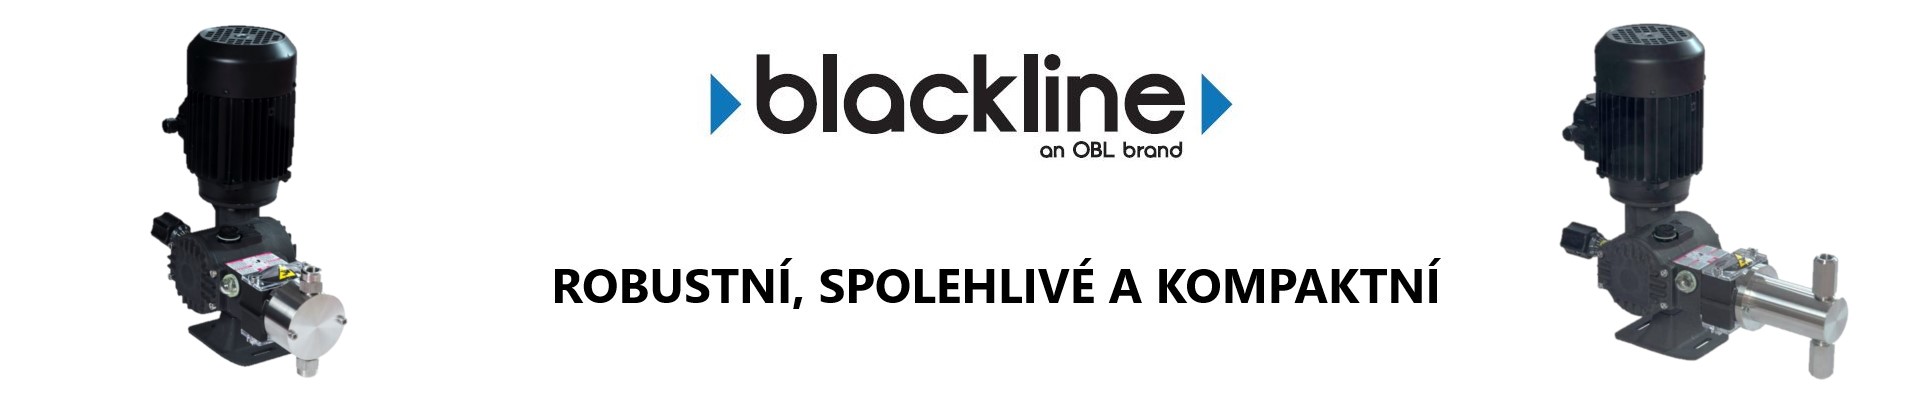 dávkovací čerpadlo OBL série R blackline